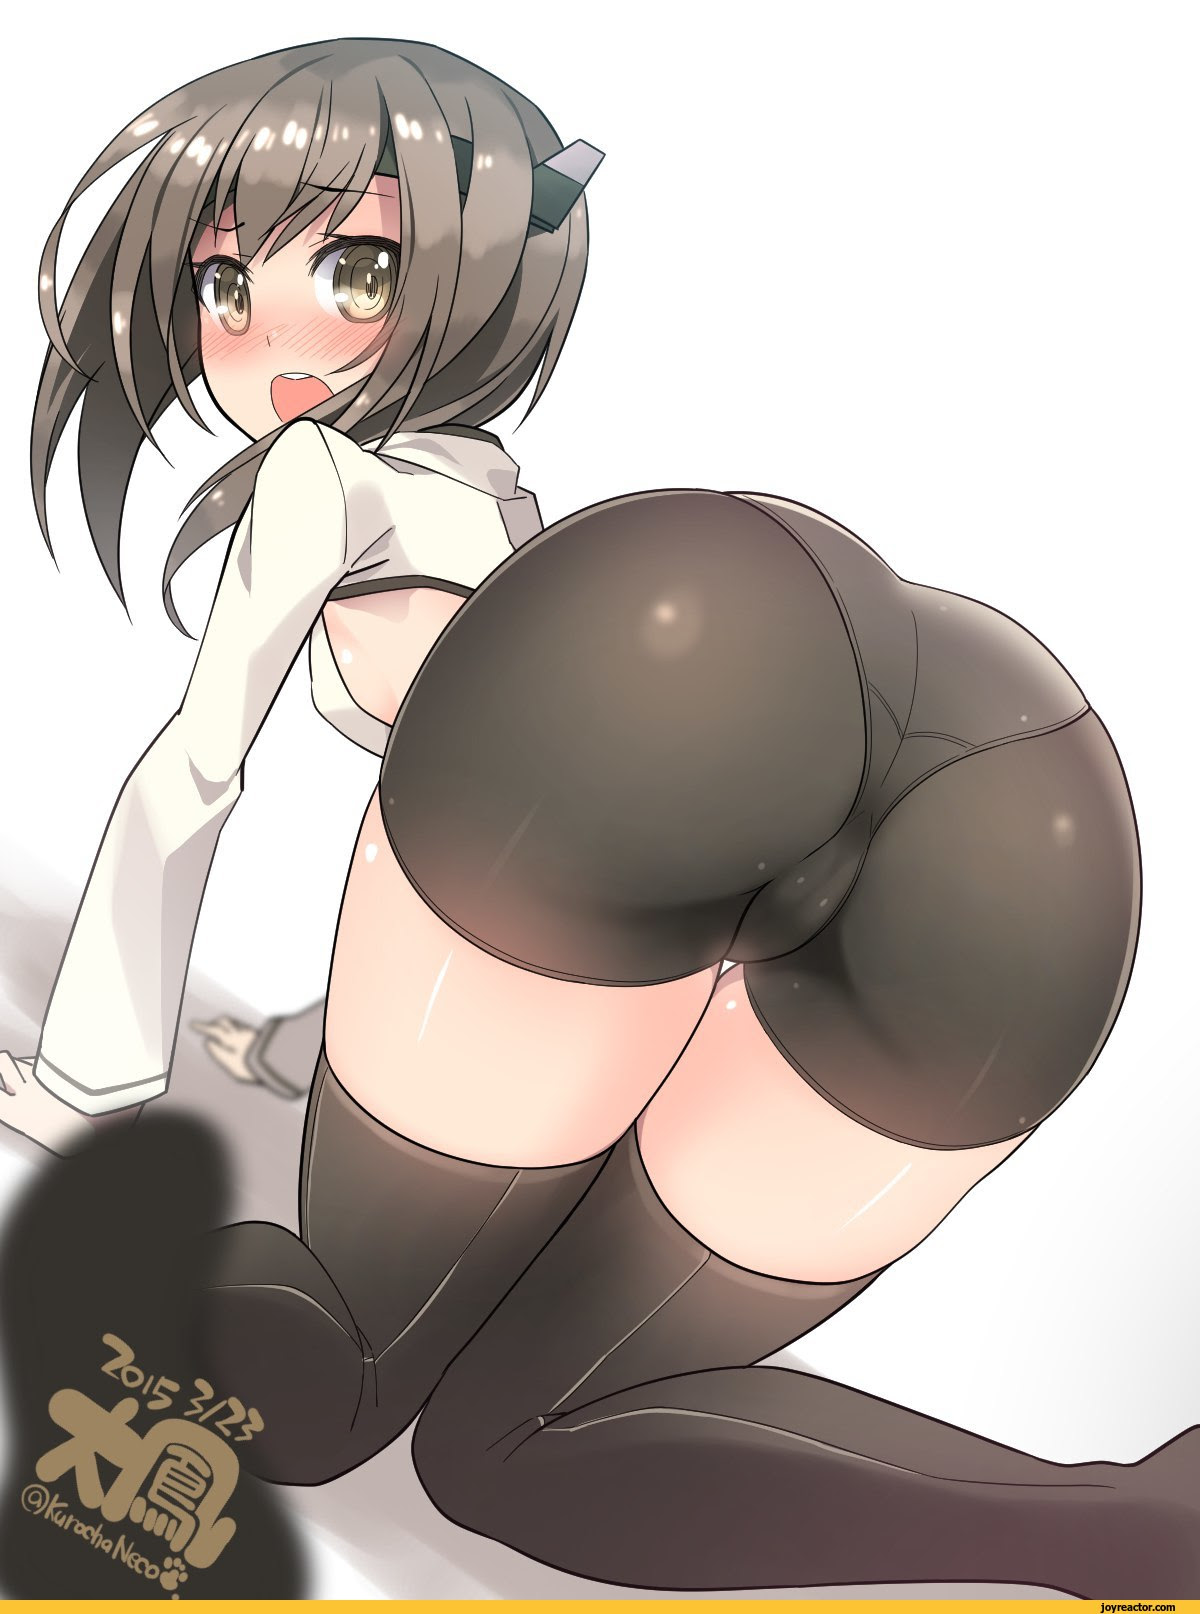 Ecchi Ass Sex - hot anime girl butt | xPornNakedxx